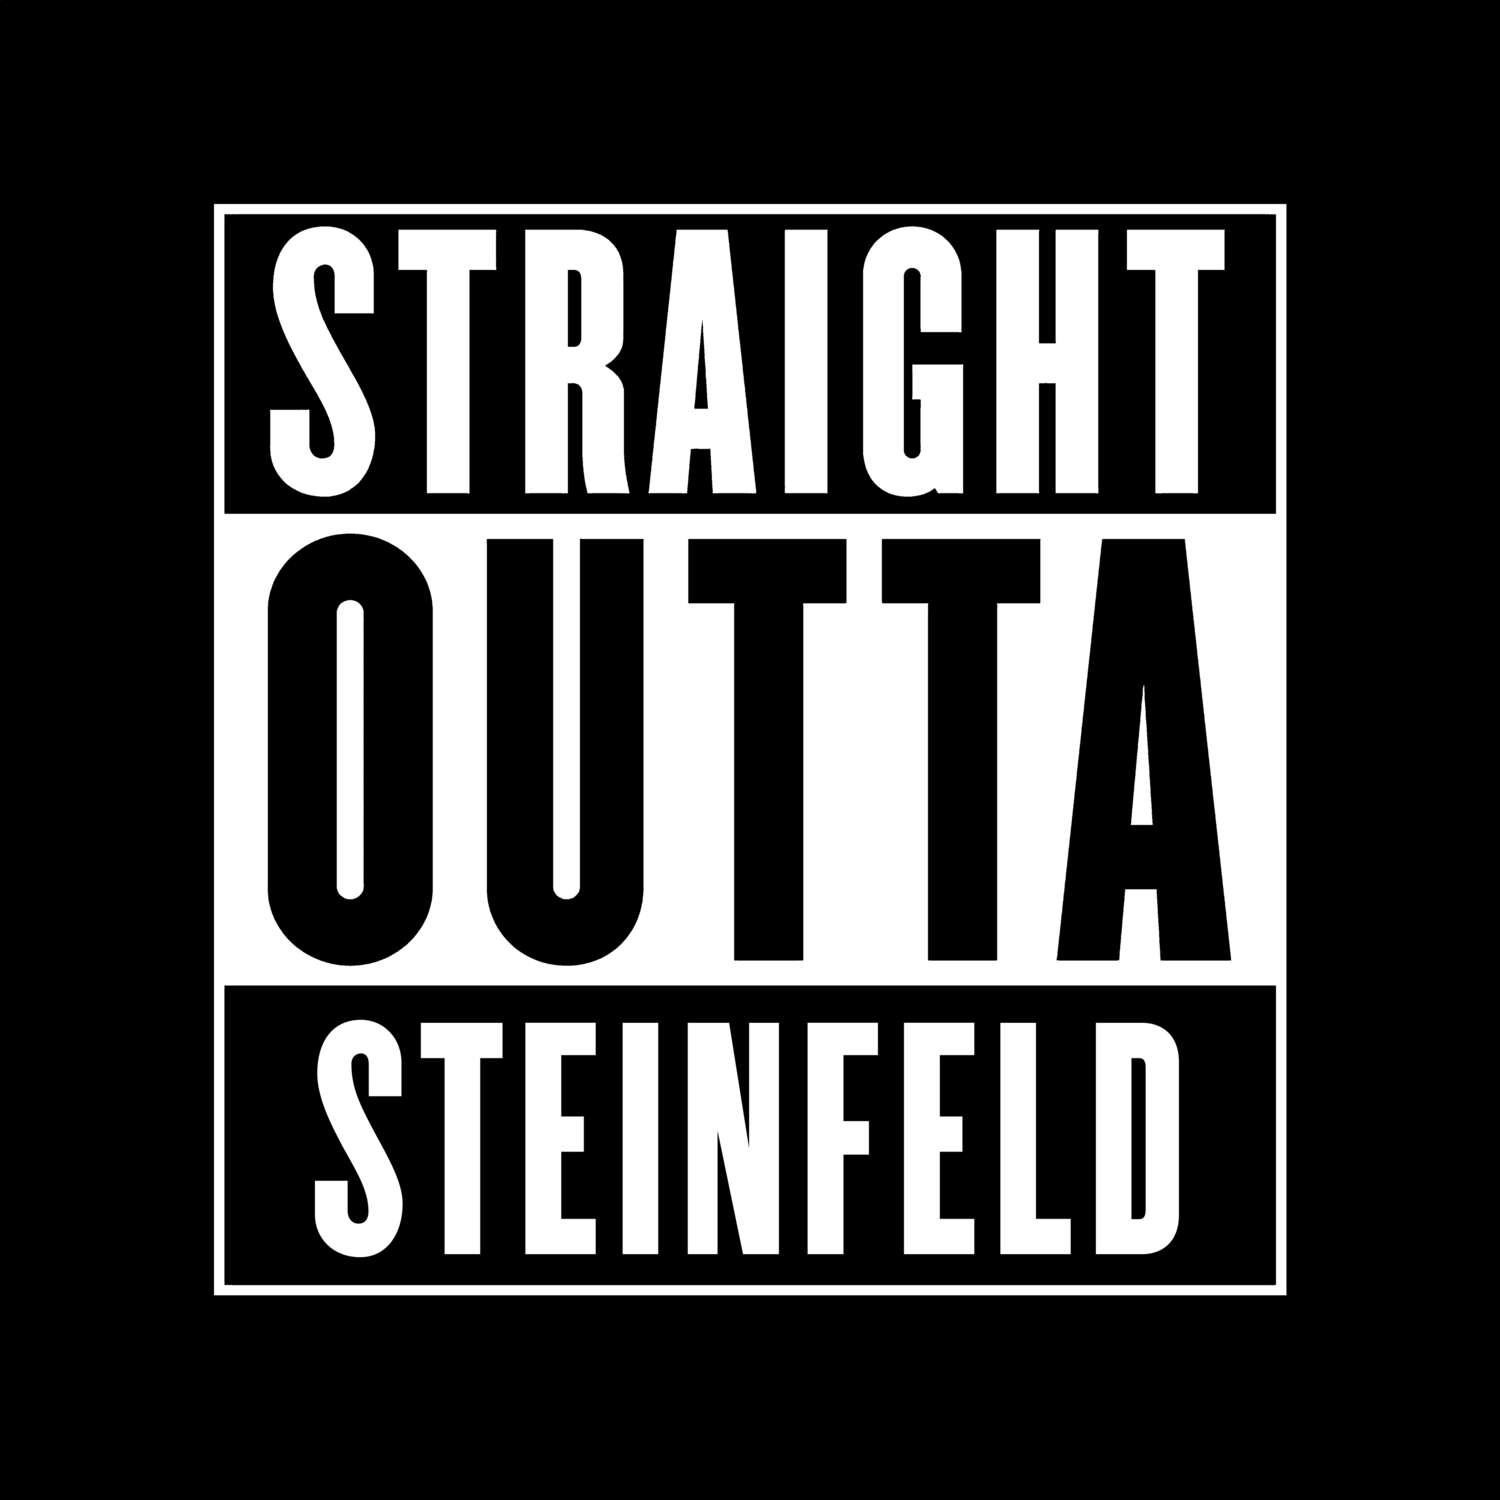 Steinfeld T-Shirt »Straight Outta«